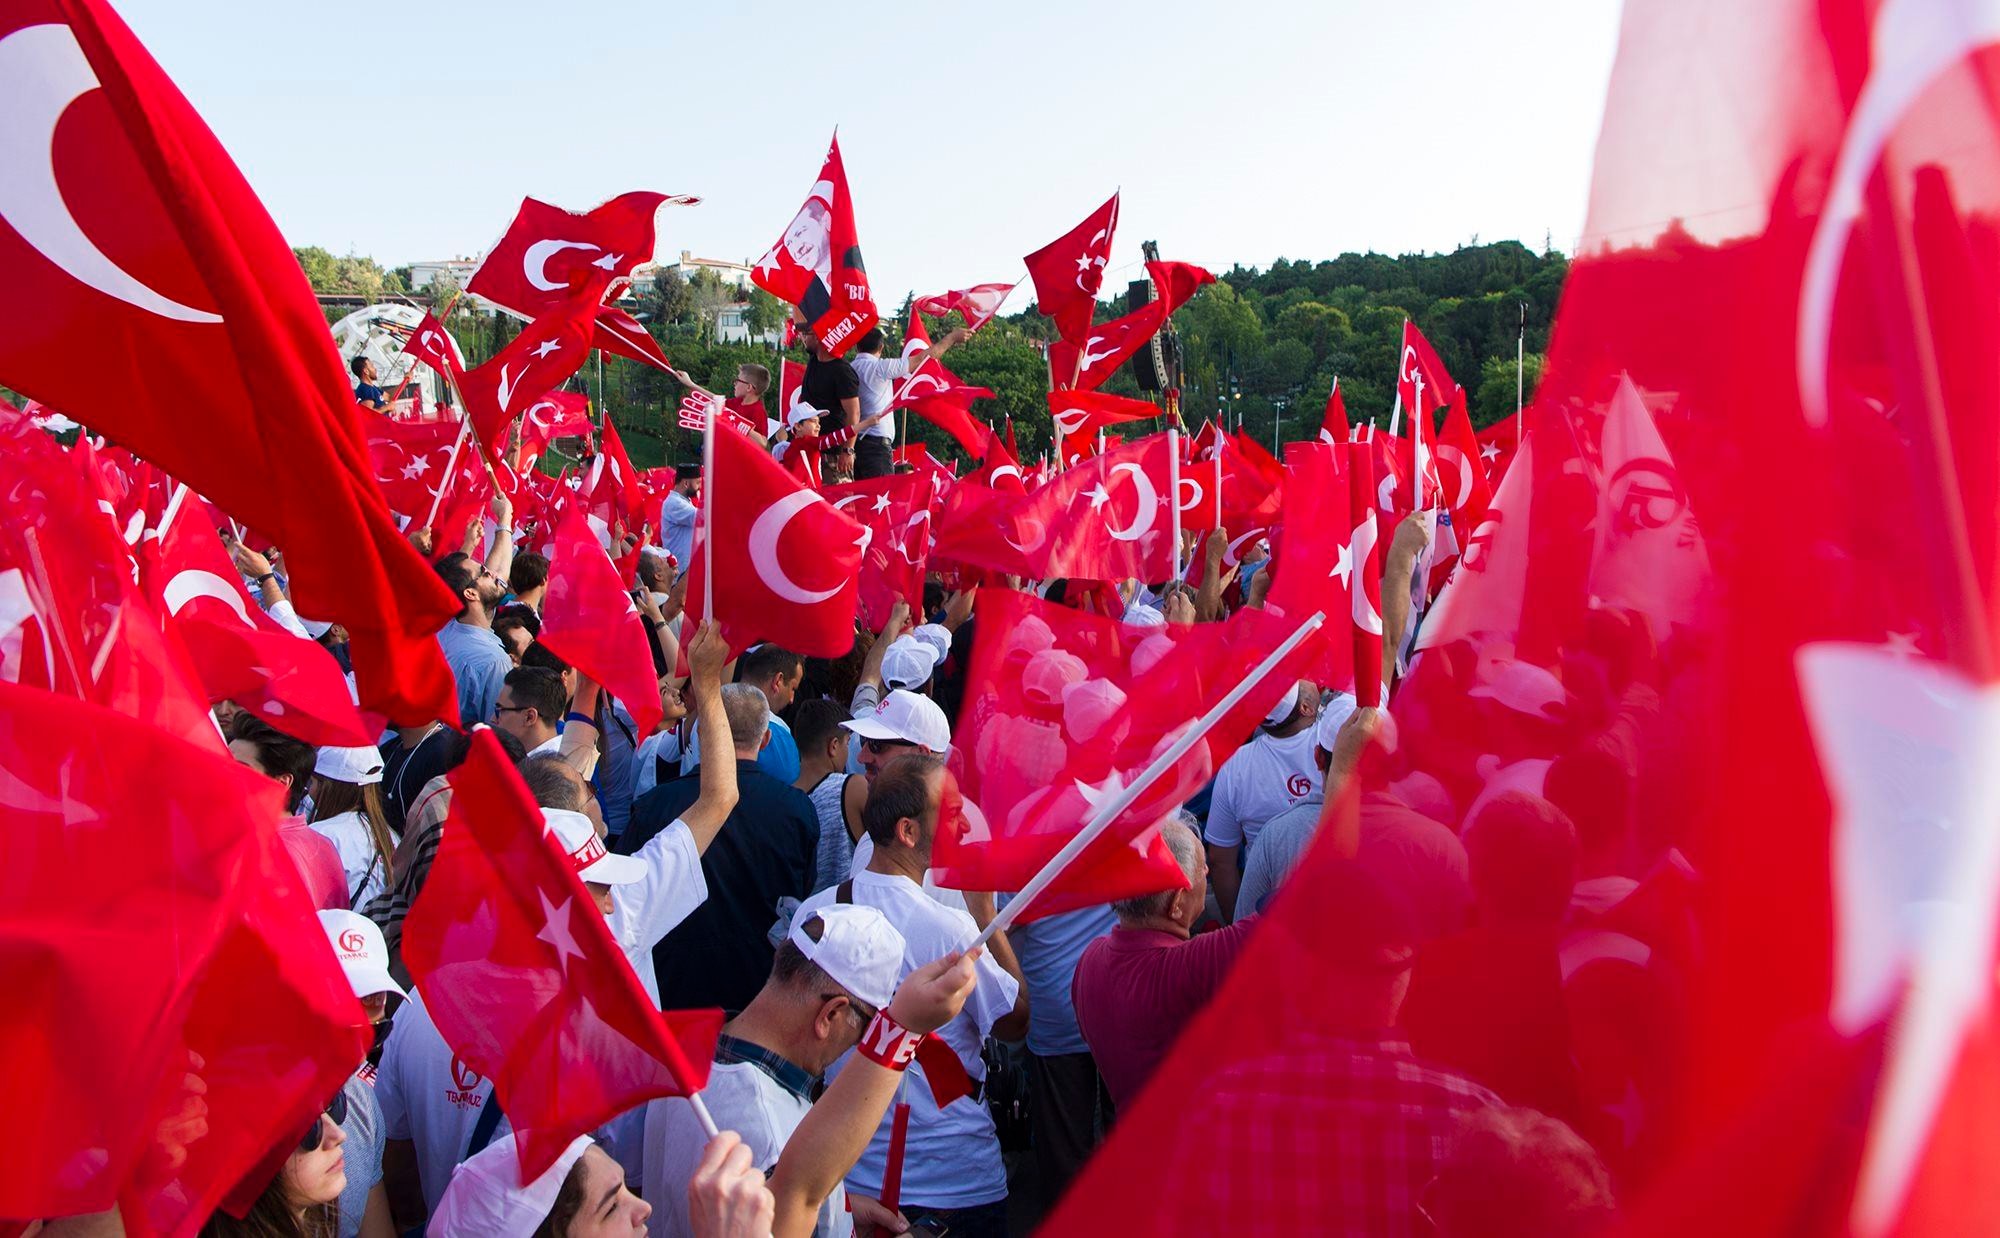 Turkse bellers krijgen automatisch boodschap van president te horen